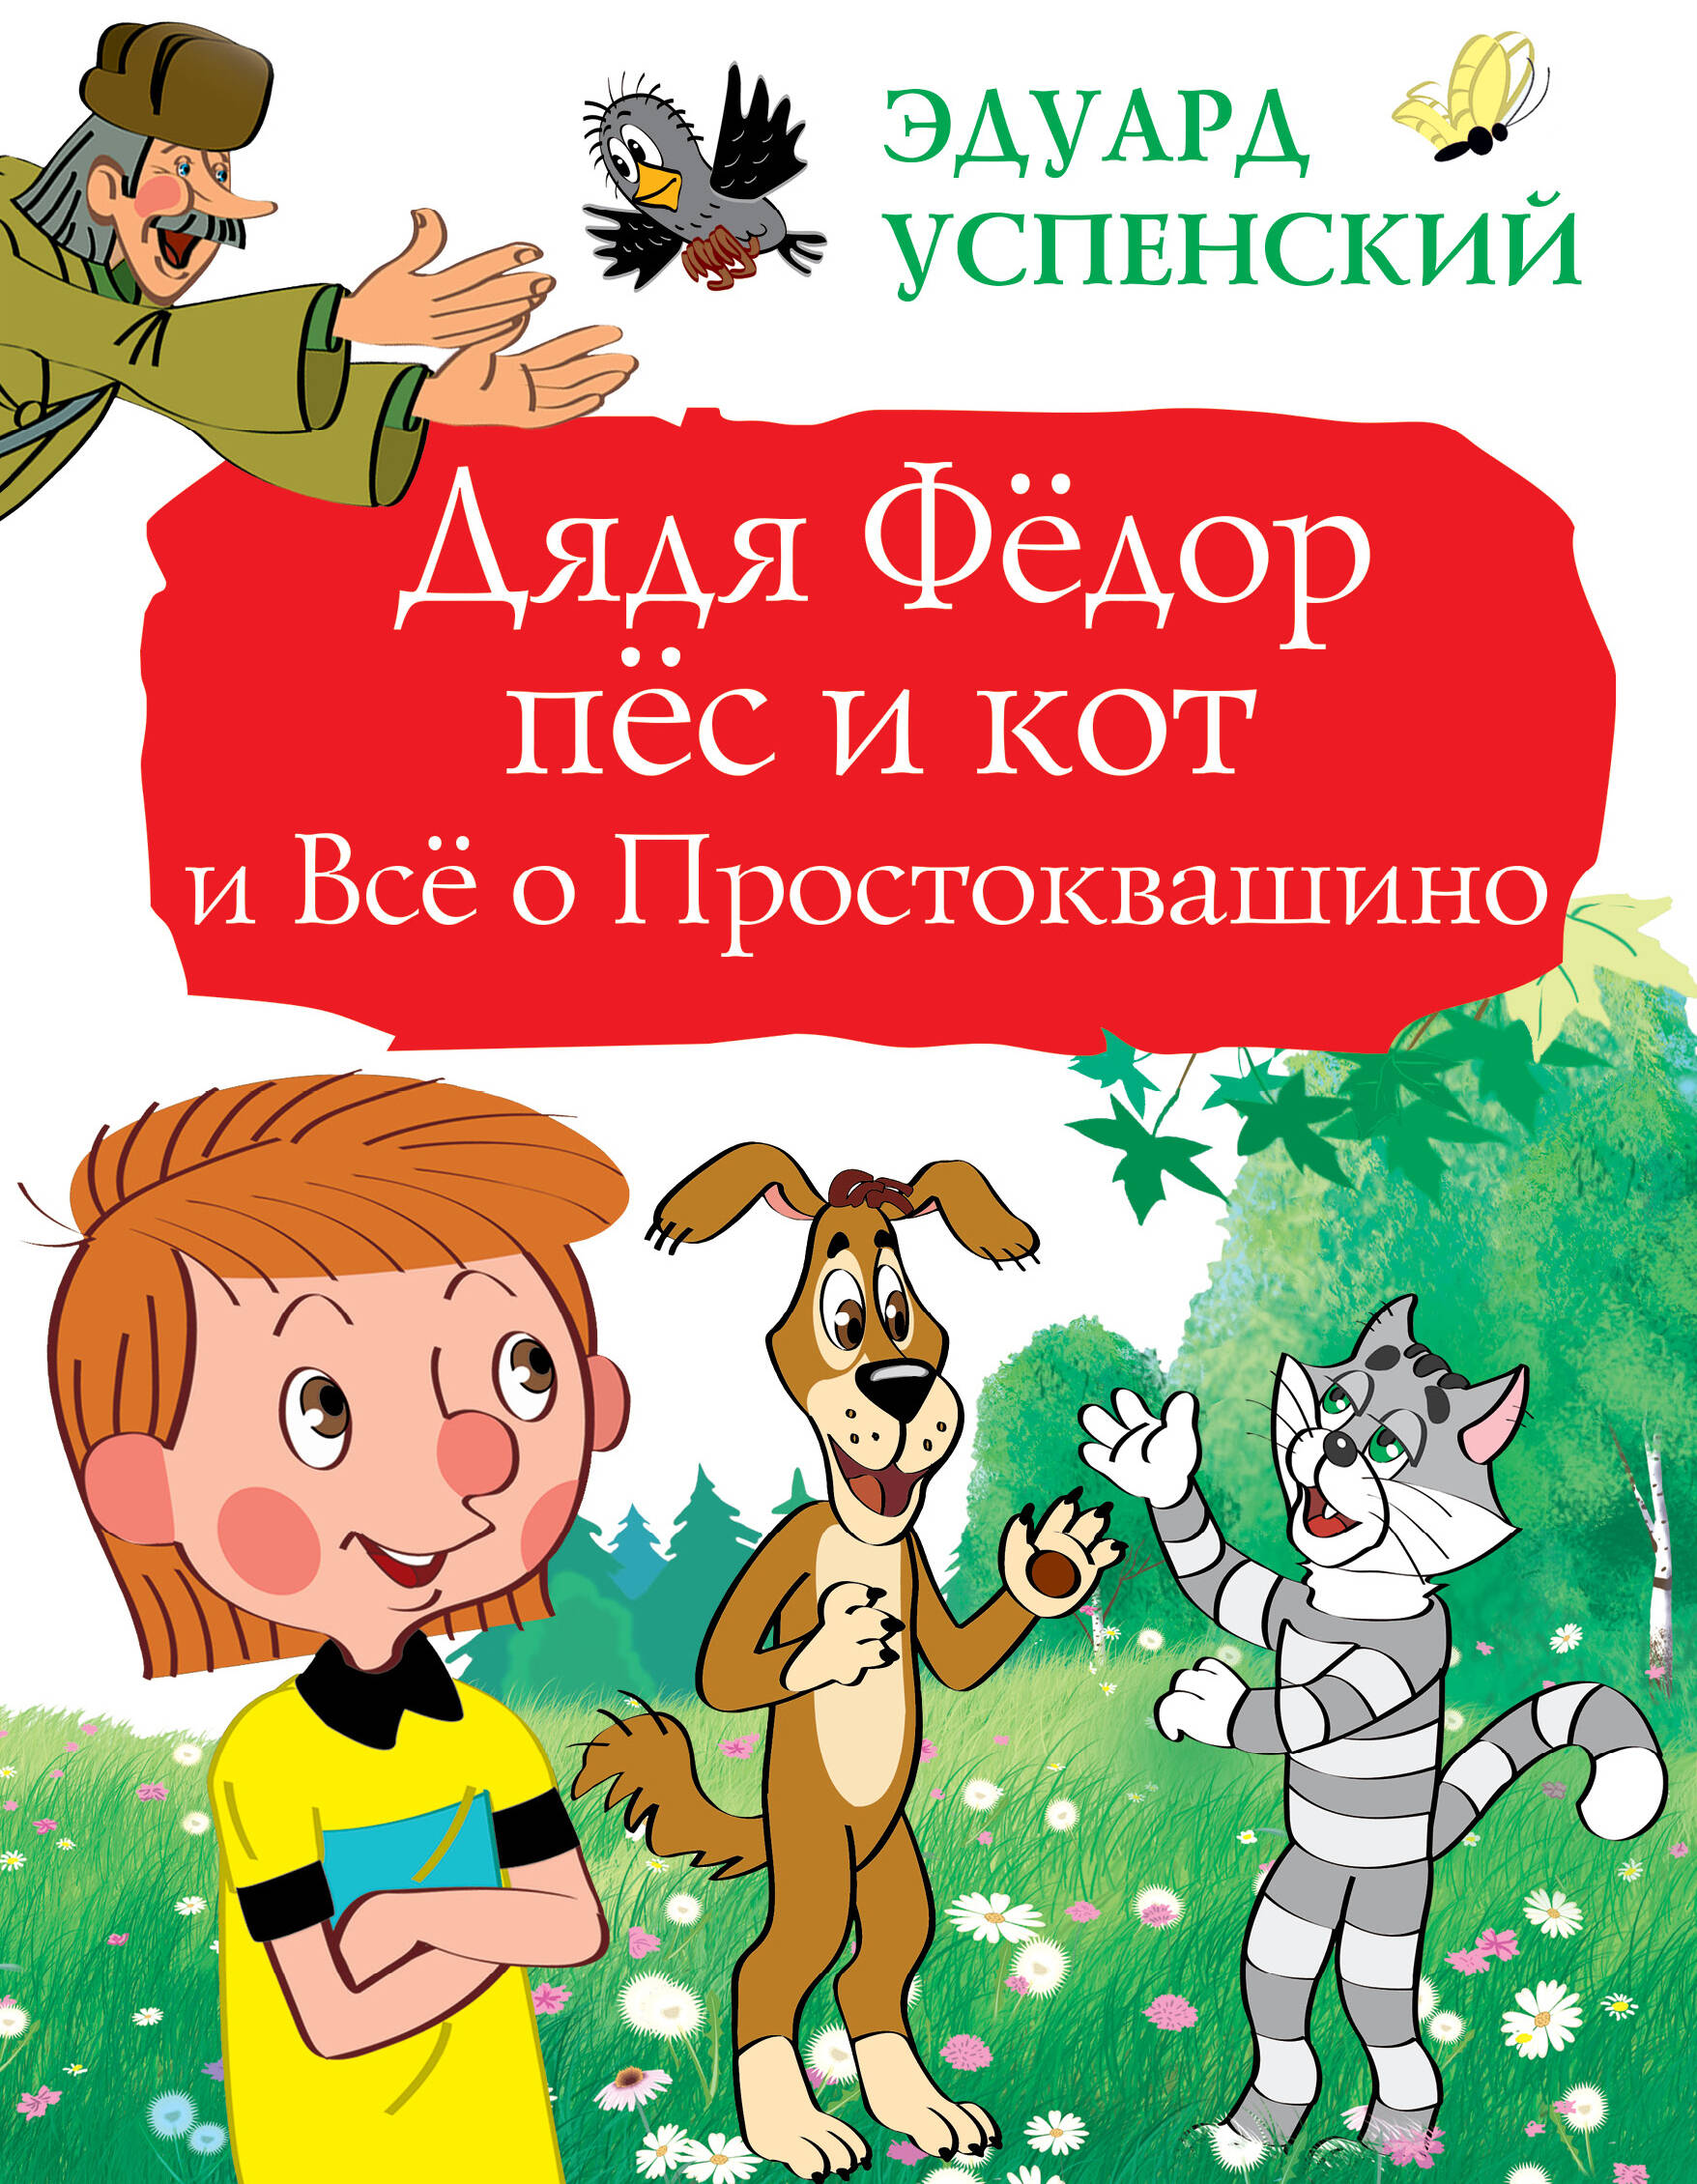 https://cdn.eksmo.ru/v2/ASE000000000724949/COVER/cover1.jpg